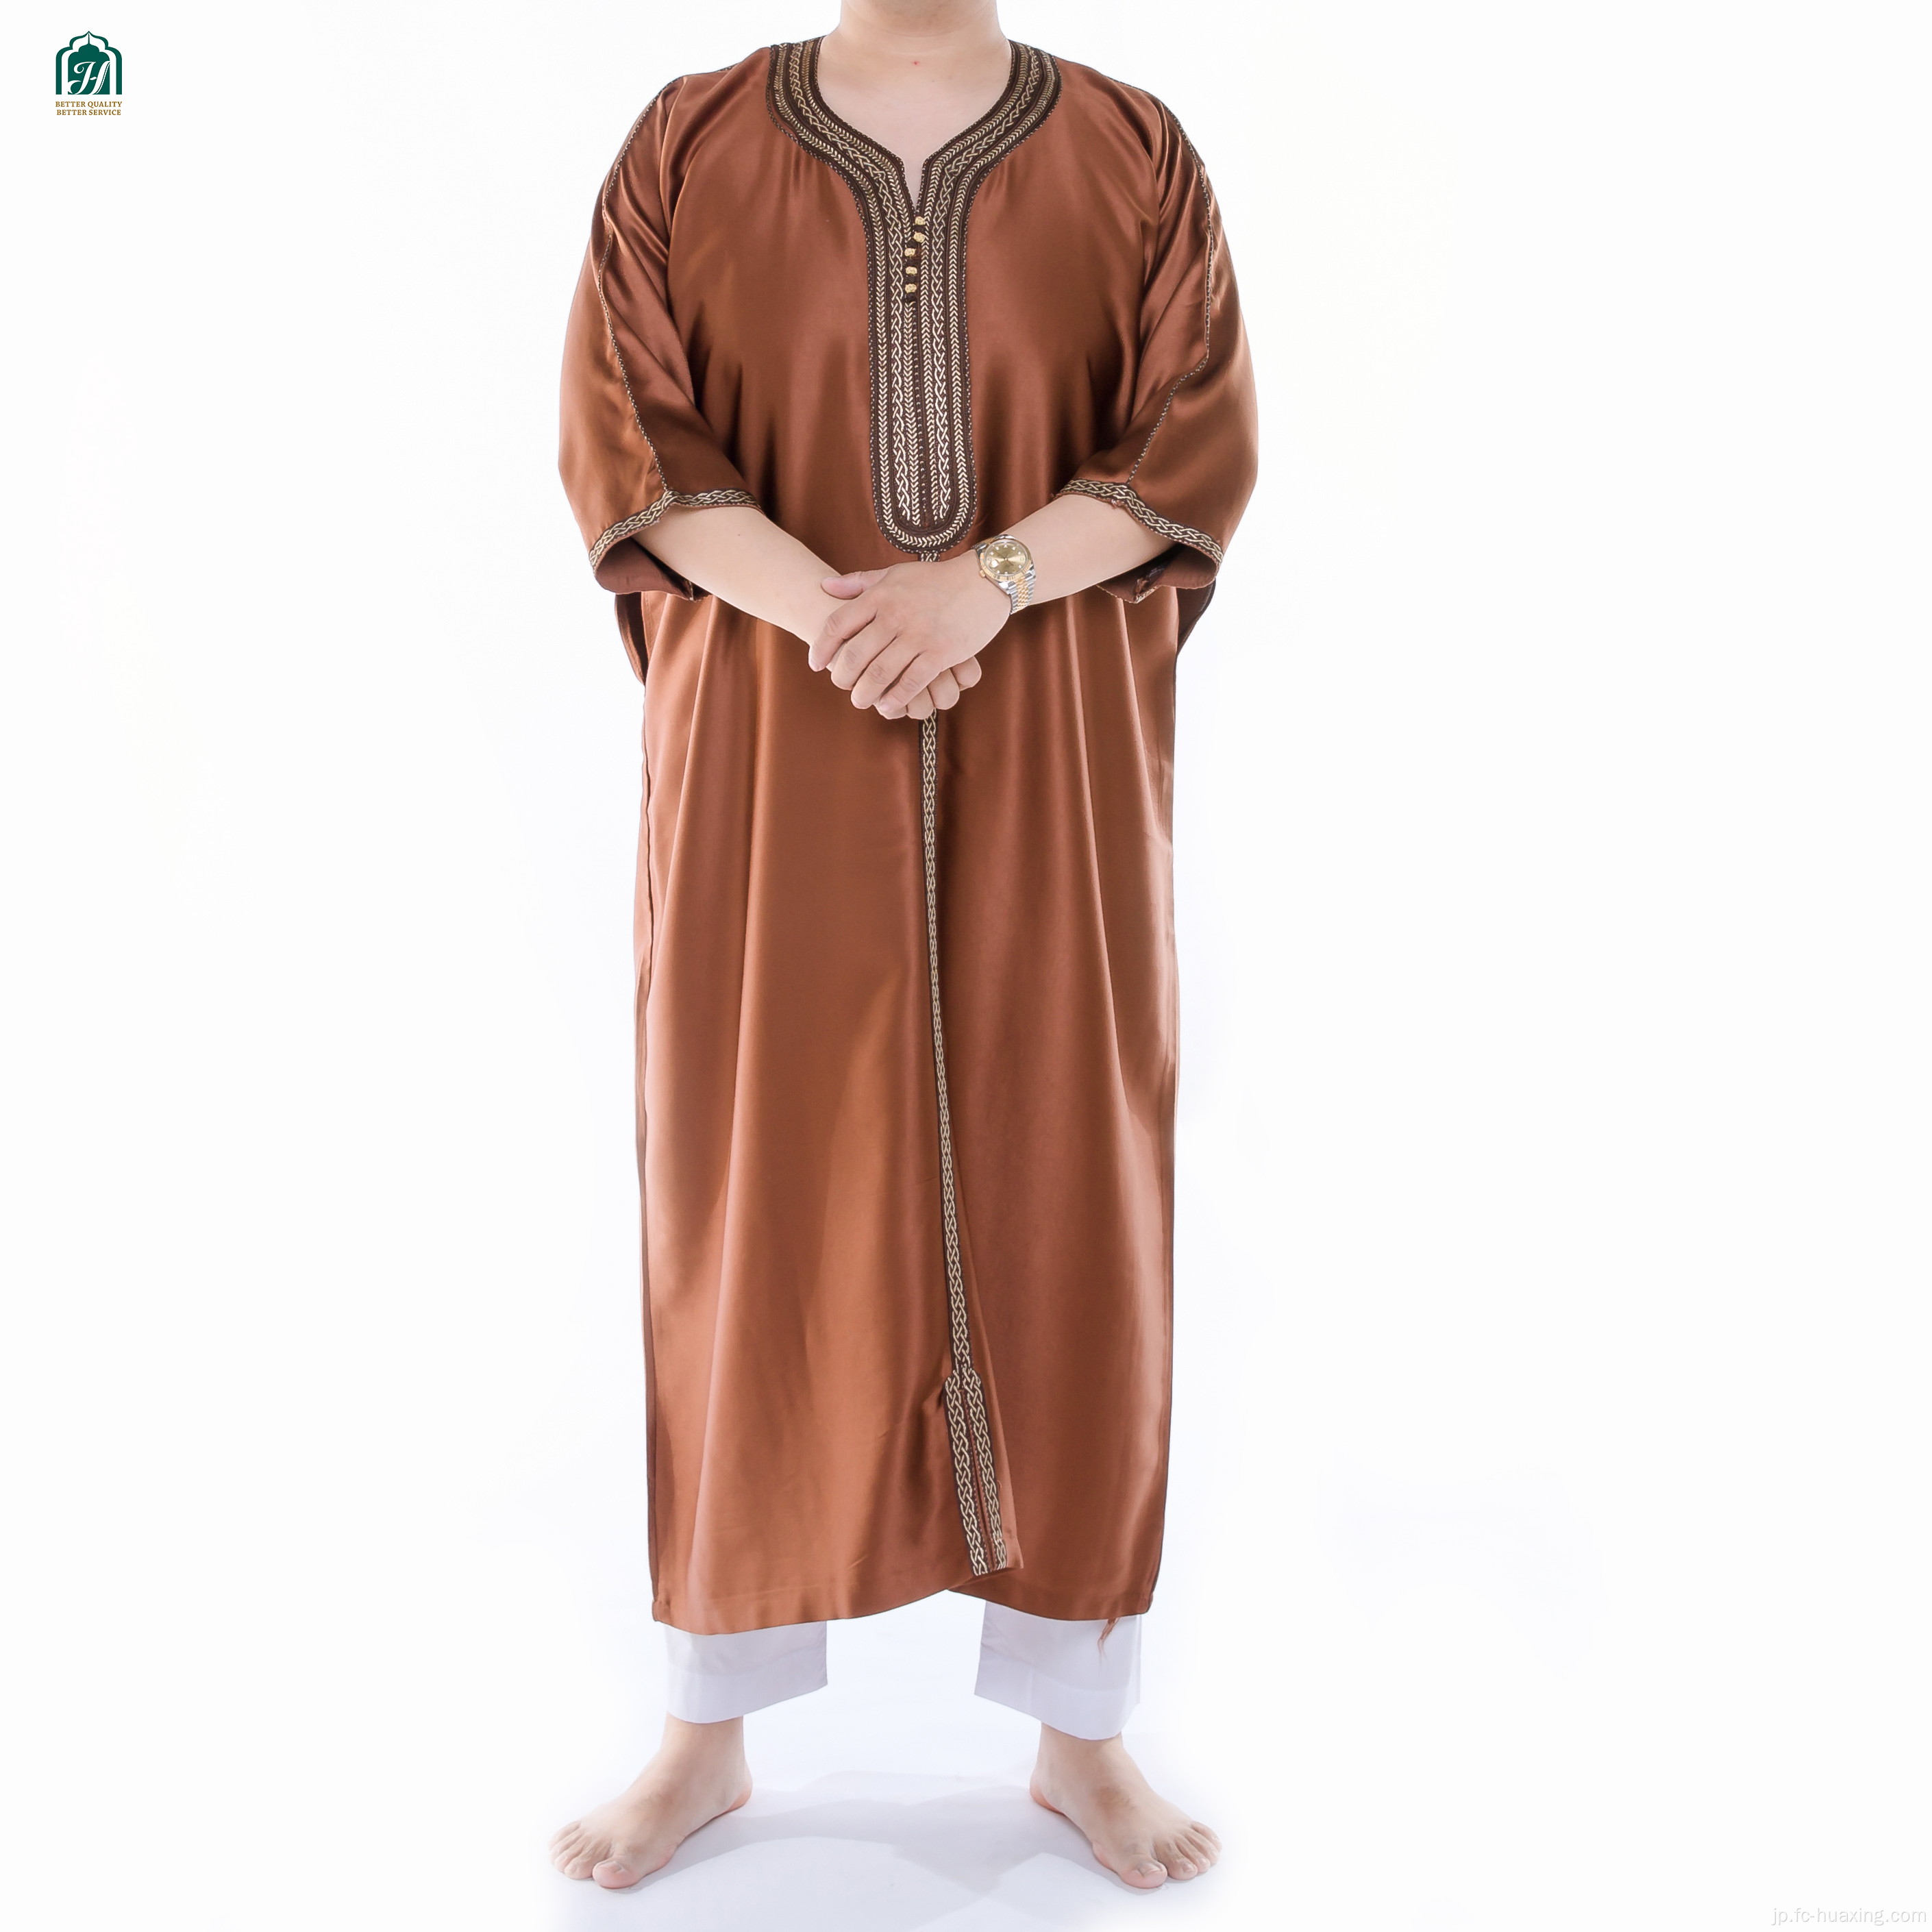 ダファー高品質のファッショナブルなダファー・トービ・イスラム教徒の服